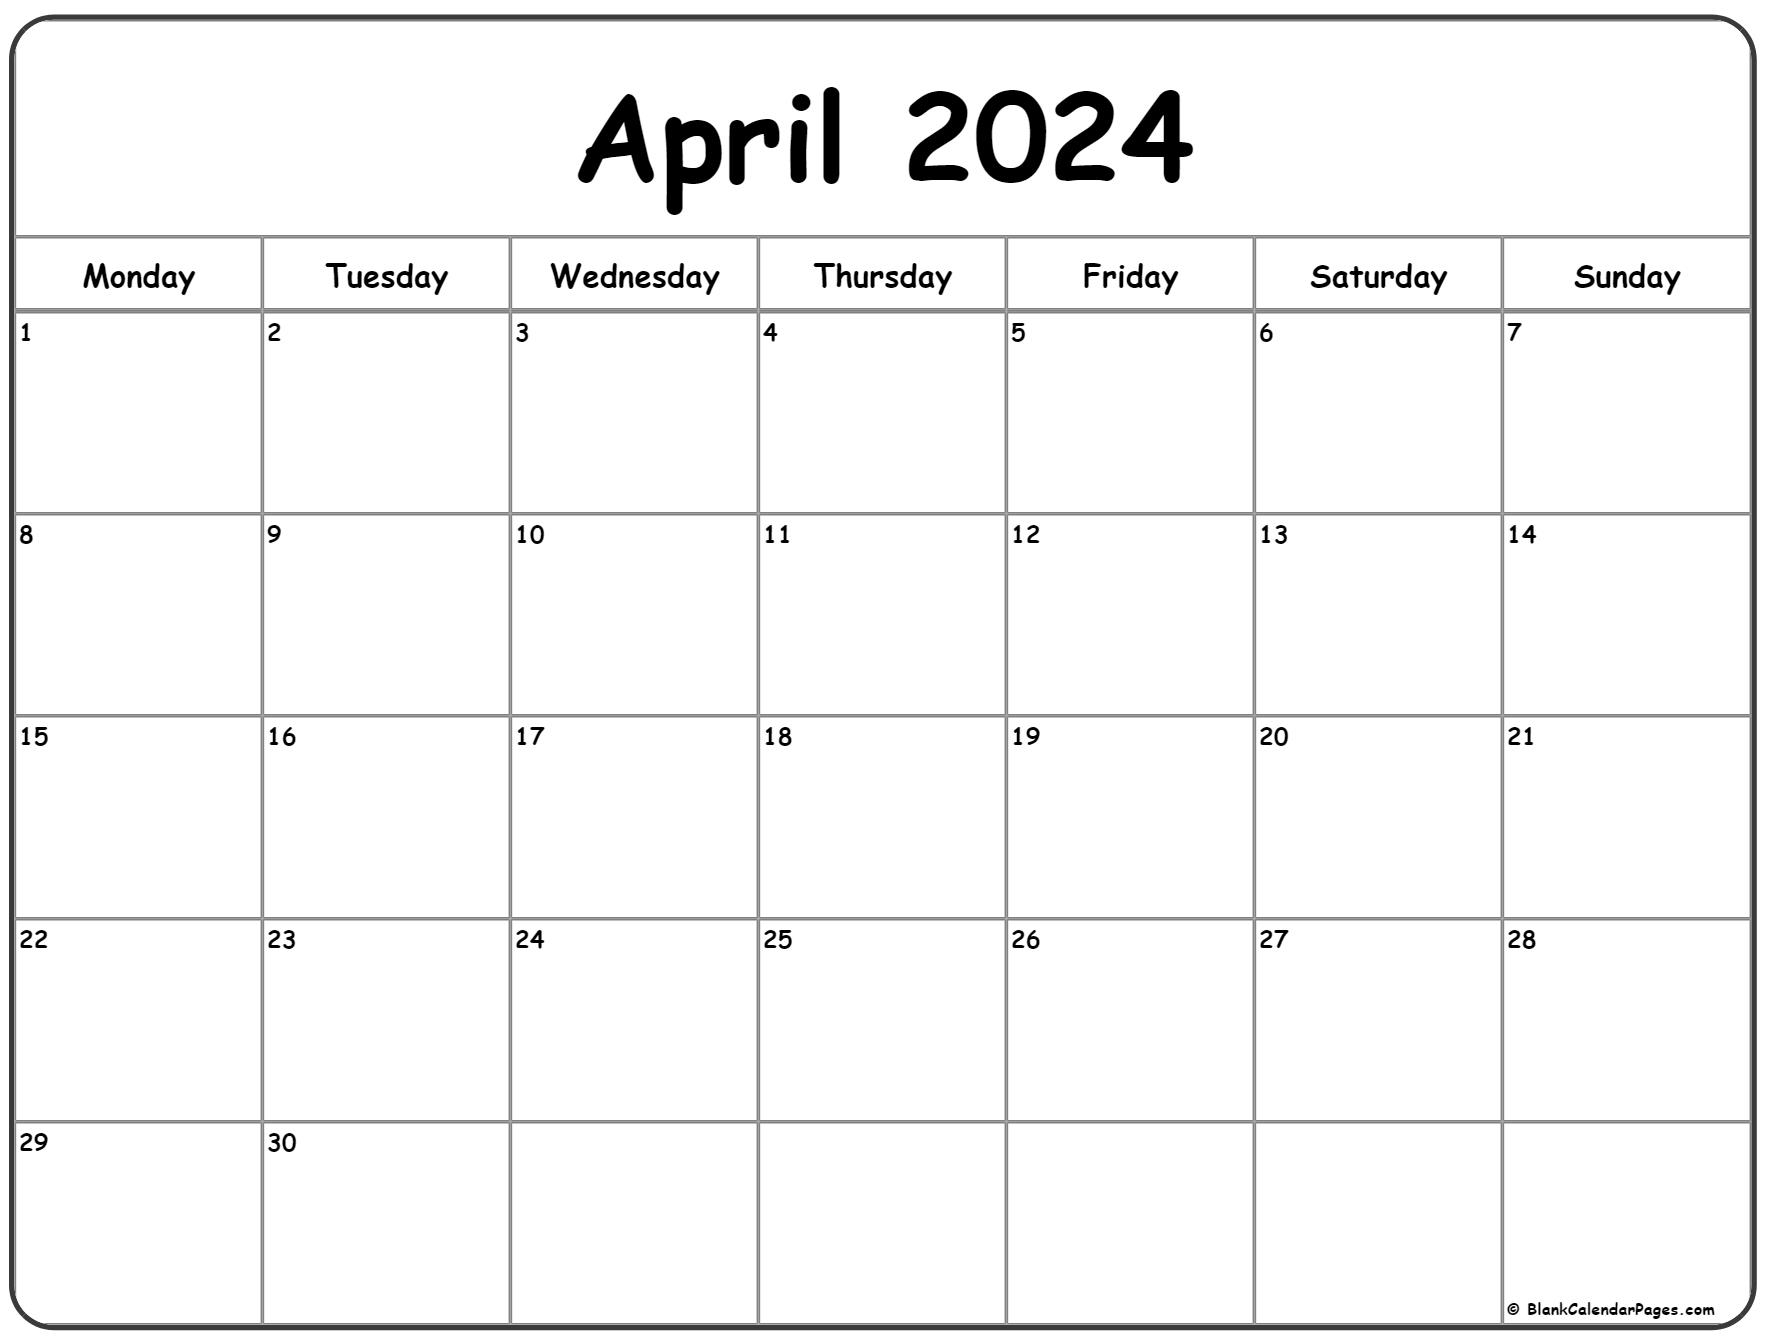 April 2024 Monday Calendar | Monday To Sunday for Calendar 2024 Printable April